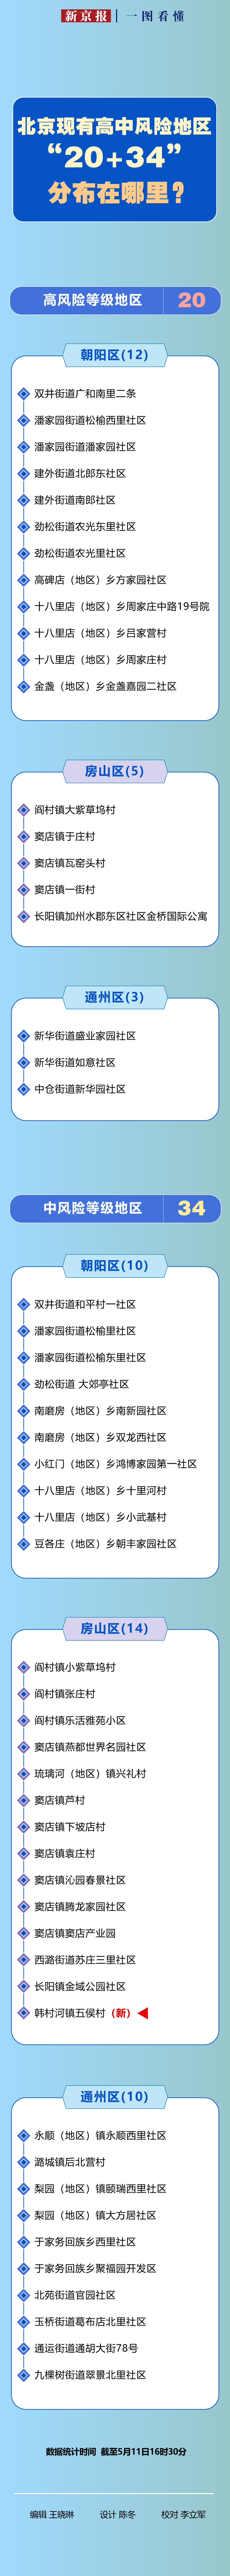 一图看懂丨北京现有高中风险地区“20＋34”，分布在哪里？